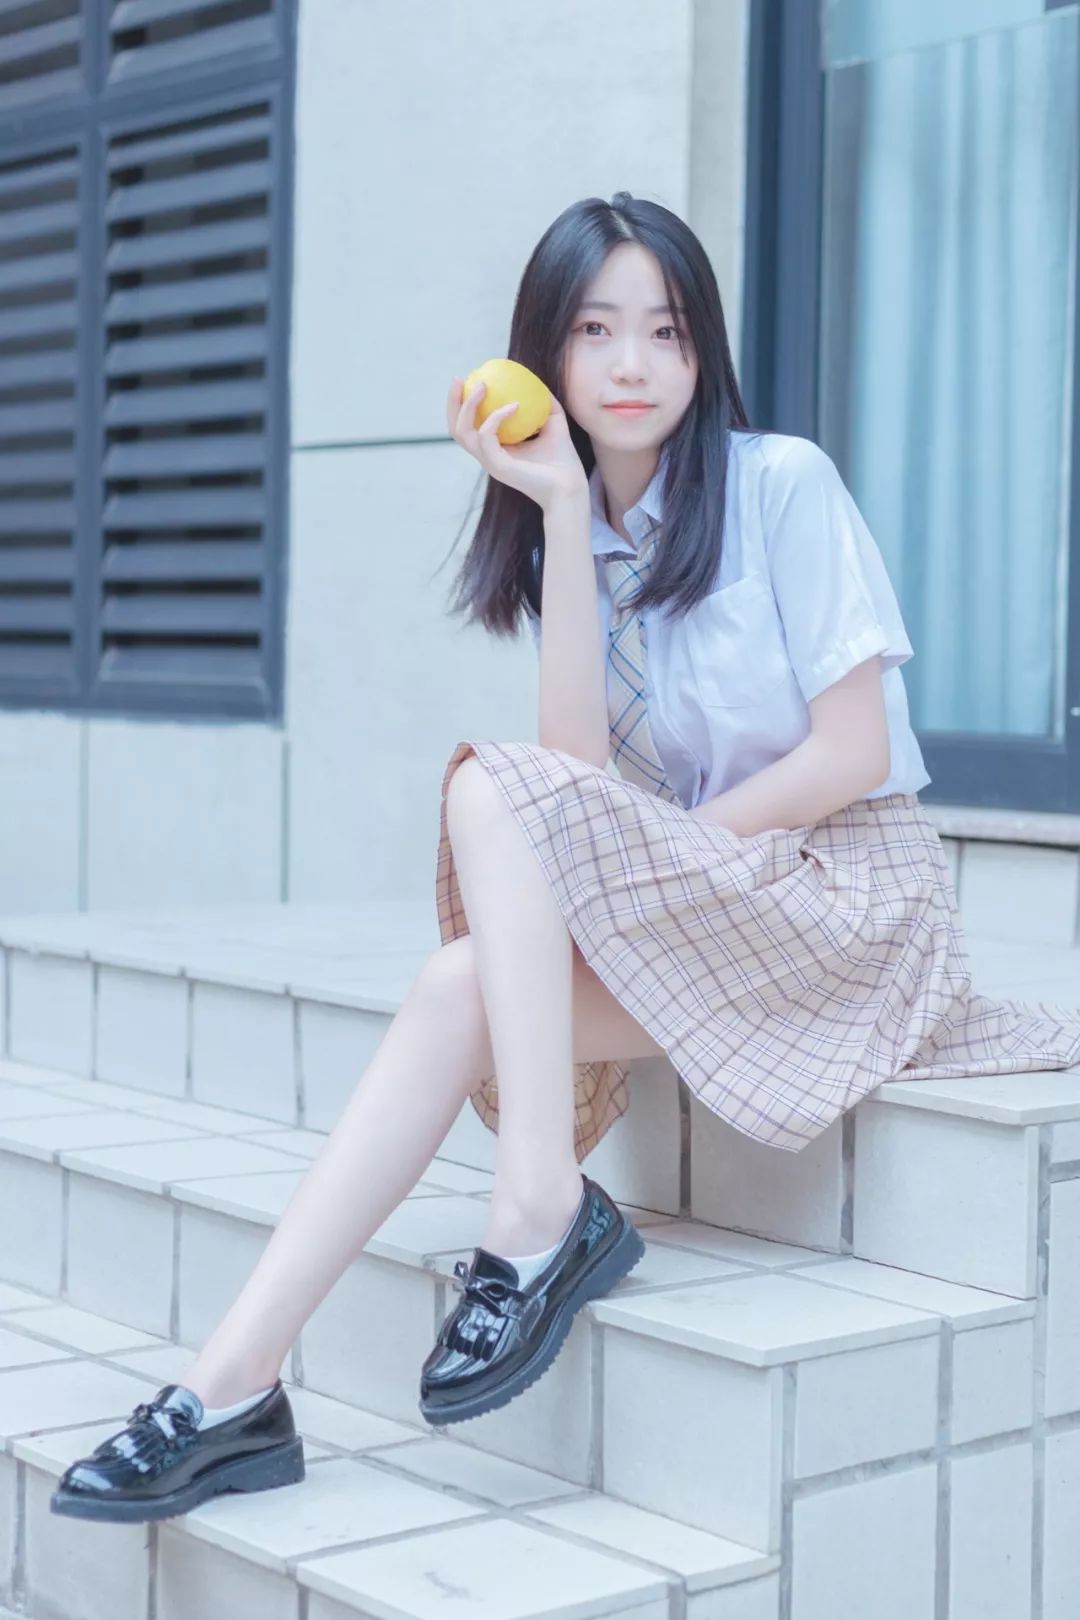 妹子摄影 – JK制服白白大长腿少女，手拿柠檬你要吃吗？_图片 No.3